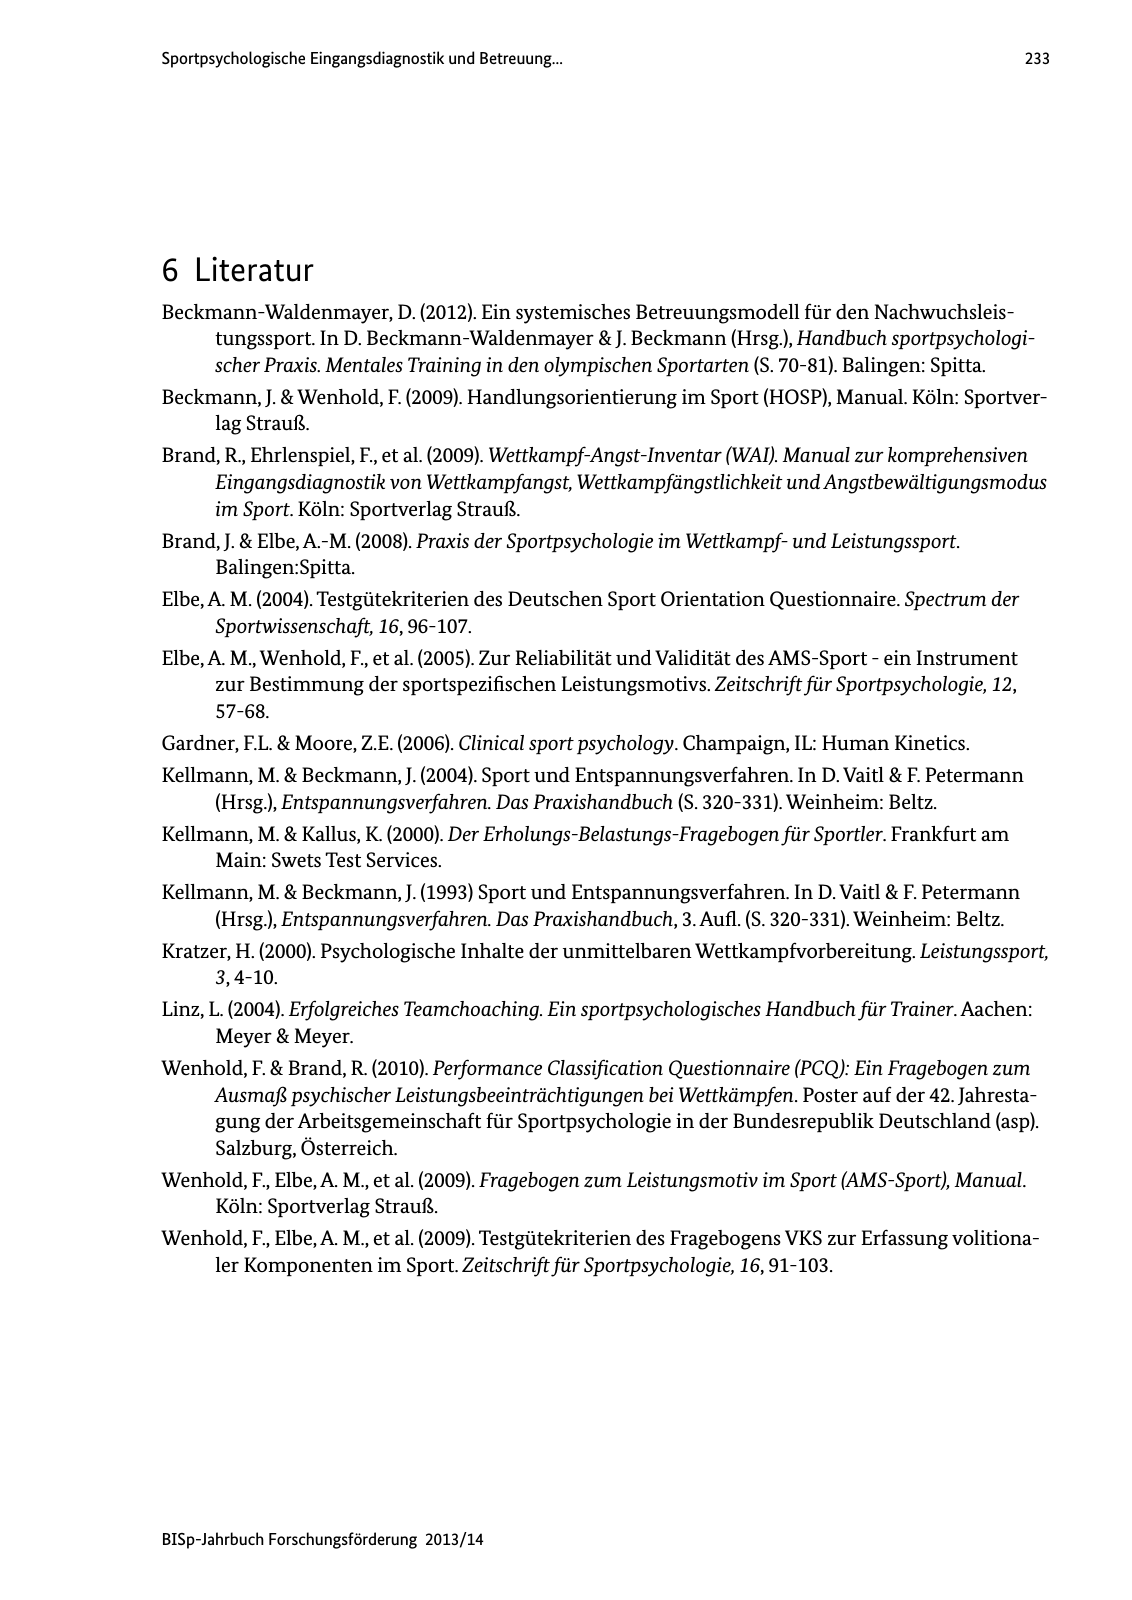 Vorschau BISp-Jahrbuch Forschungsförderung 2013/14 Seite 234